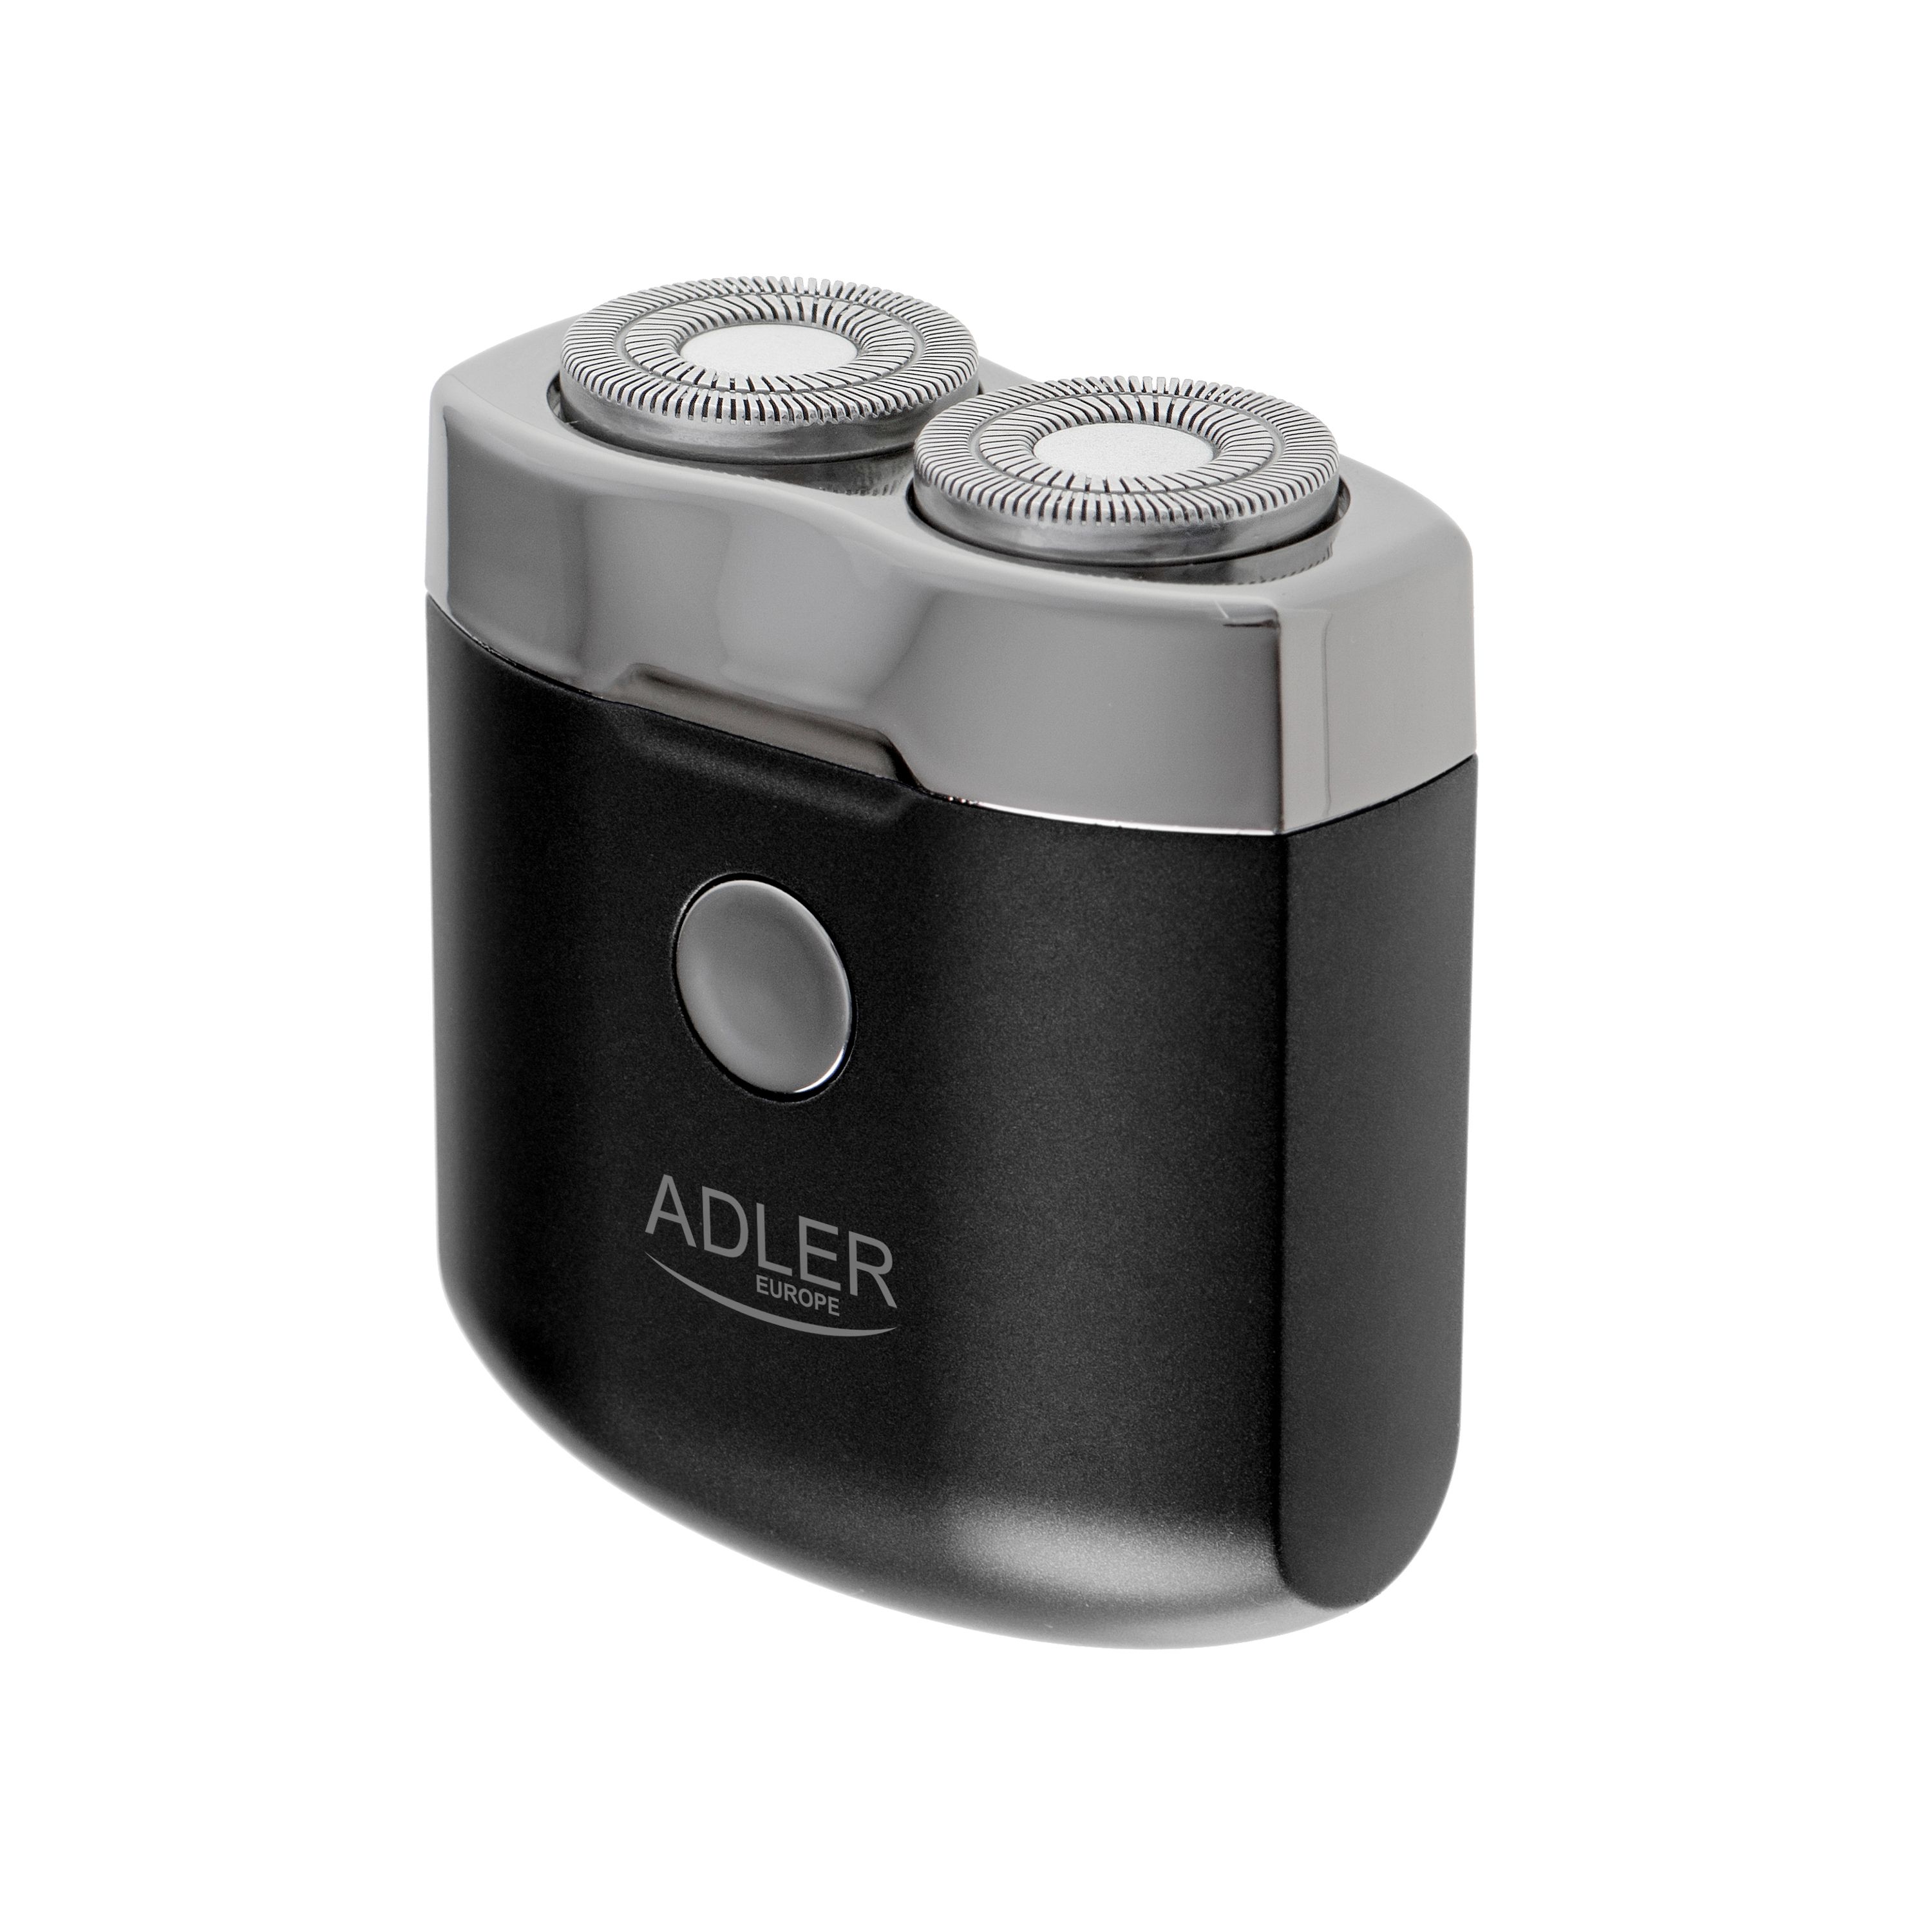 Golarka podróżna 2 głowicowa z USB Adler AD 2936 maszynka do golenia